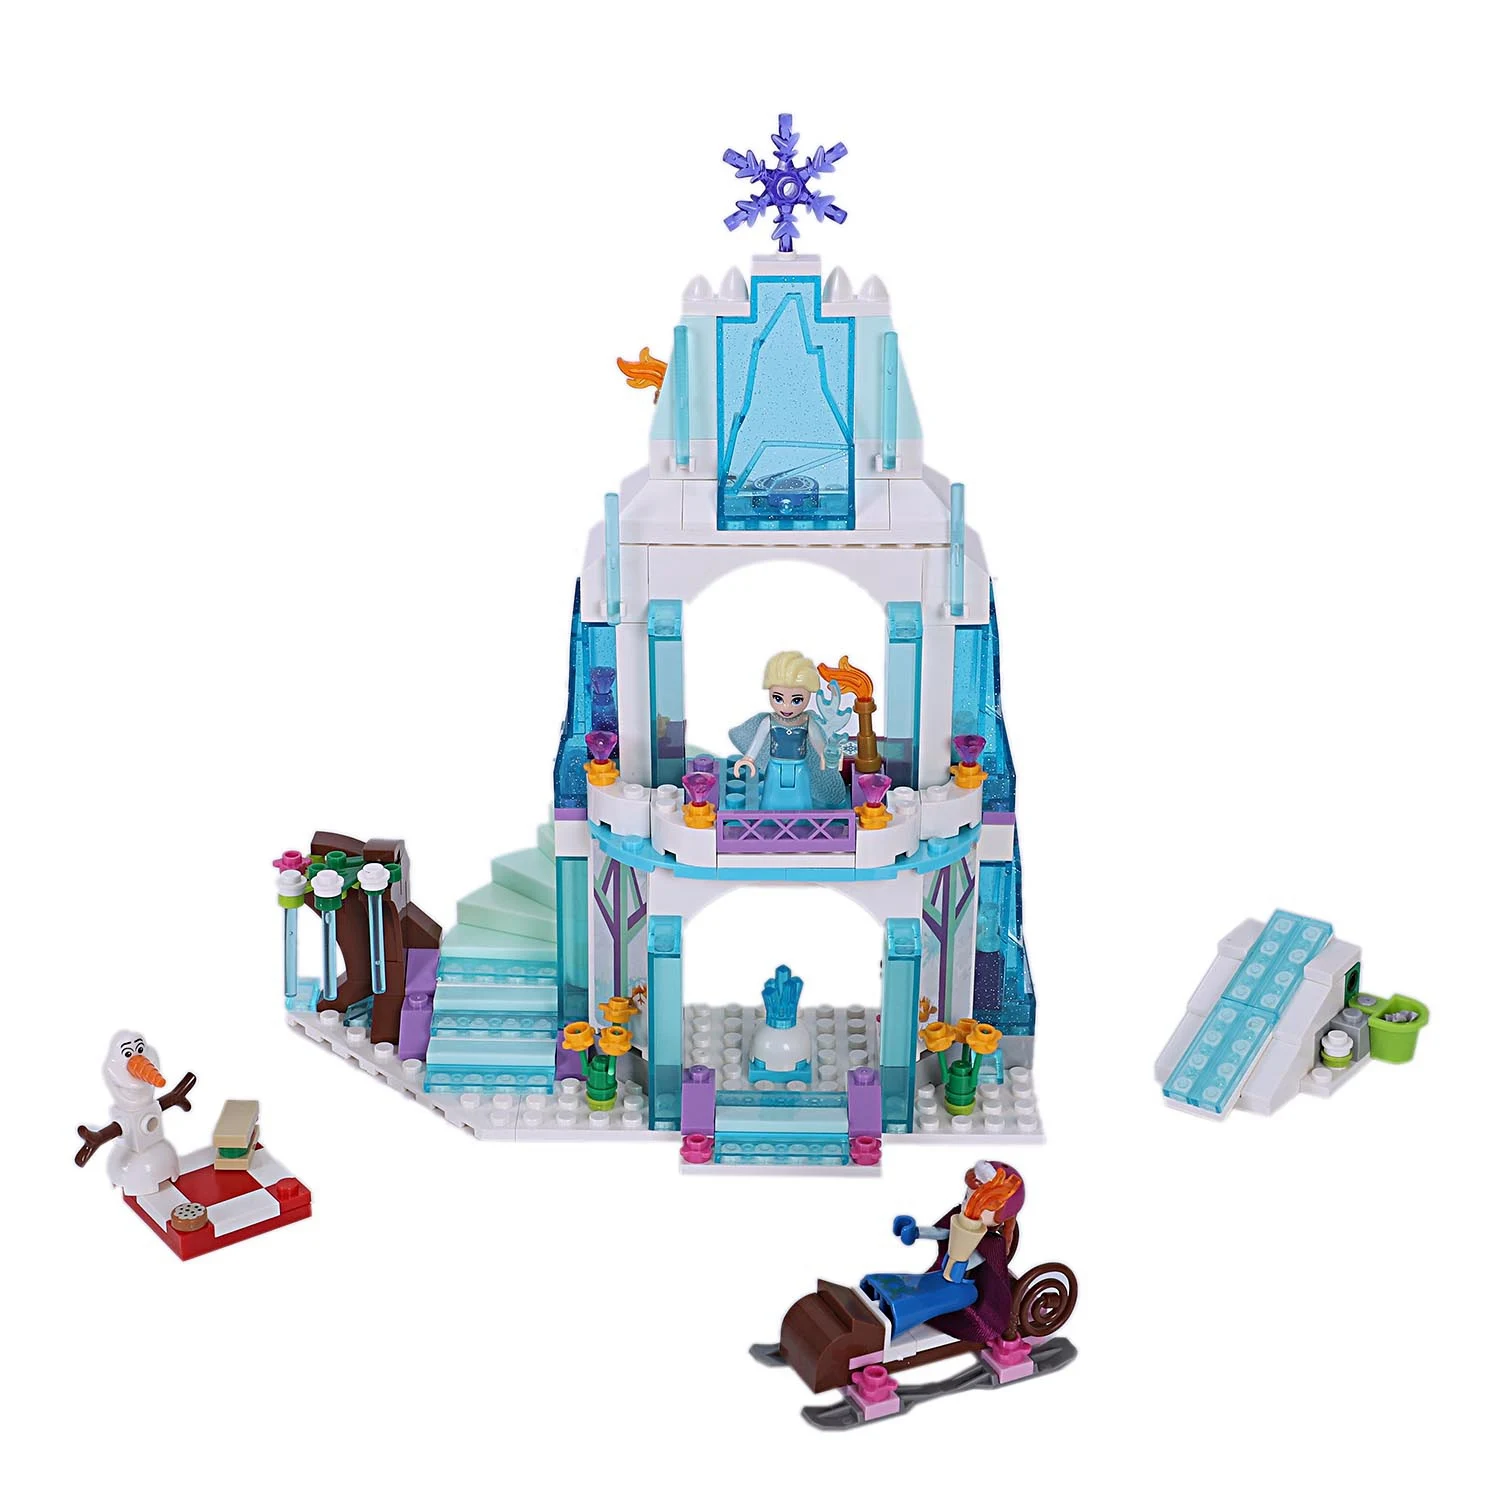 316 шт. мечта принцесса модель строительные блоки Детские Подарки Игрушки Друзья блоки подарки игрушки для детей 9001